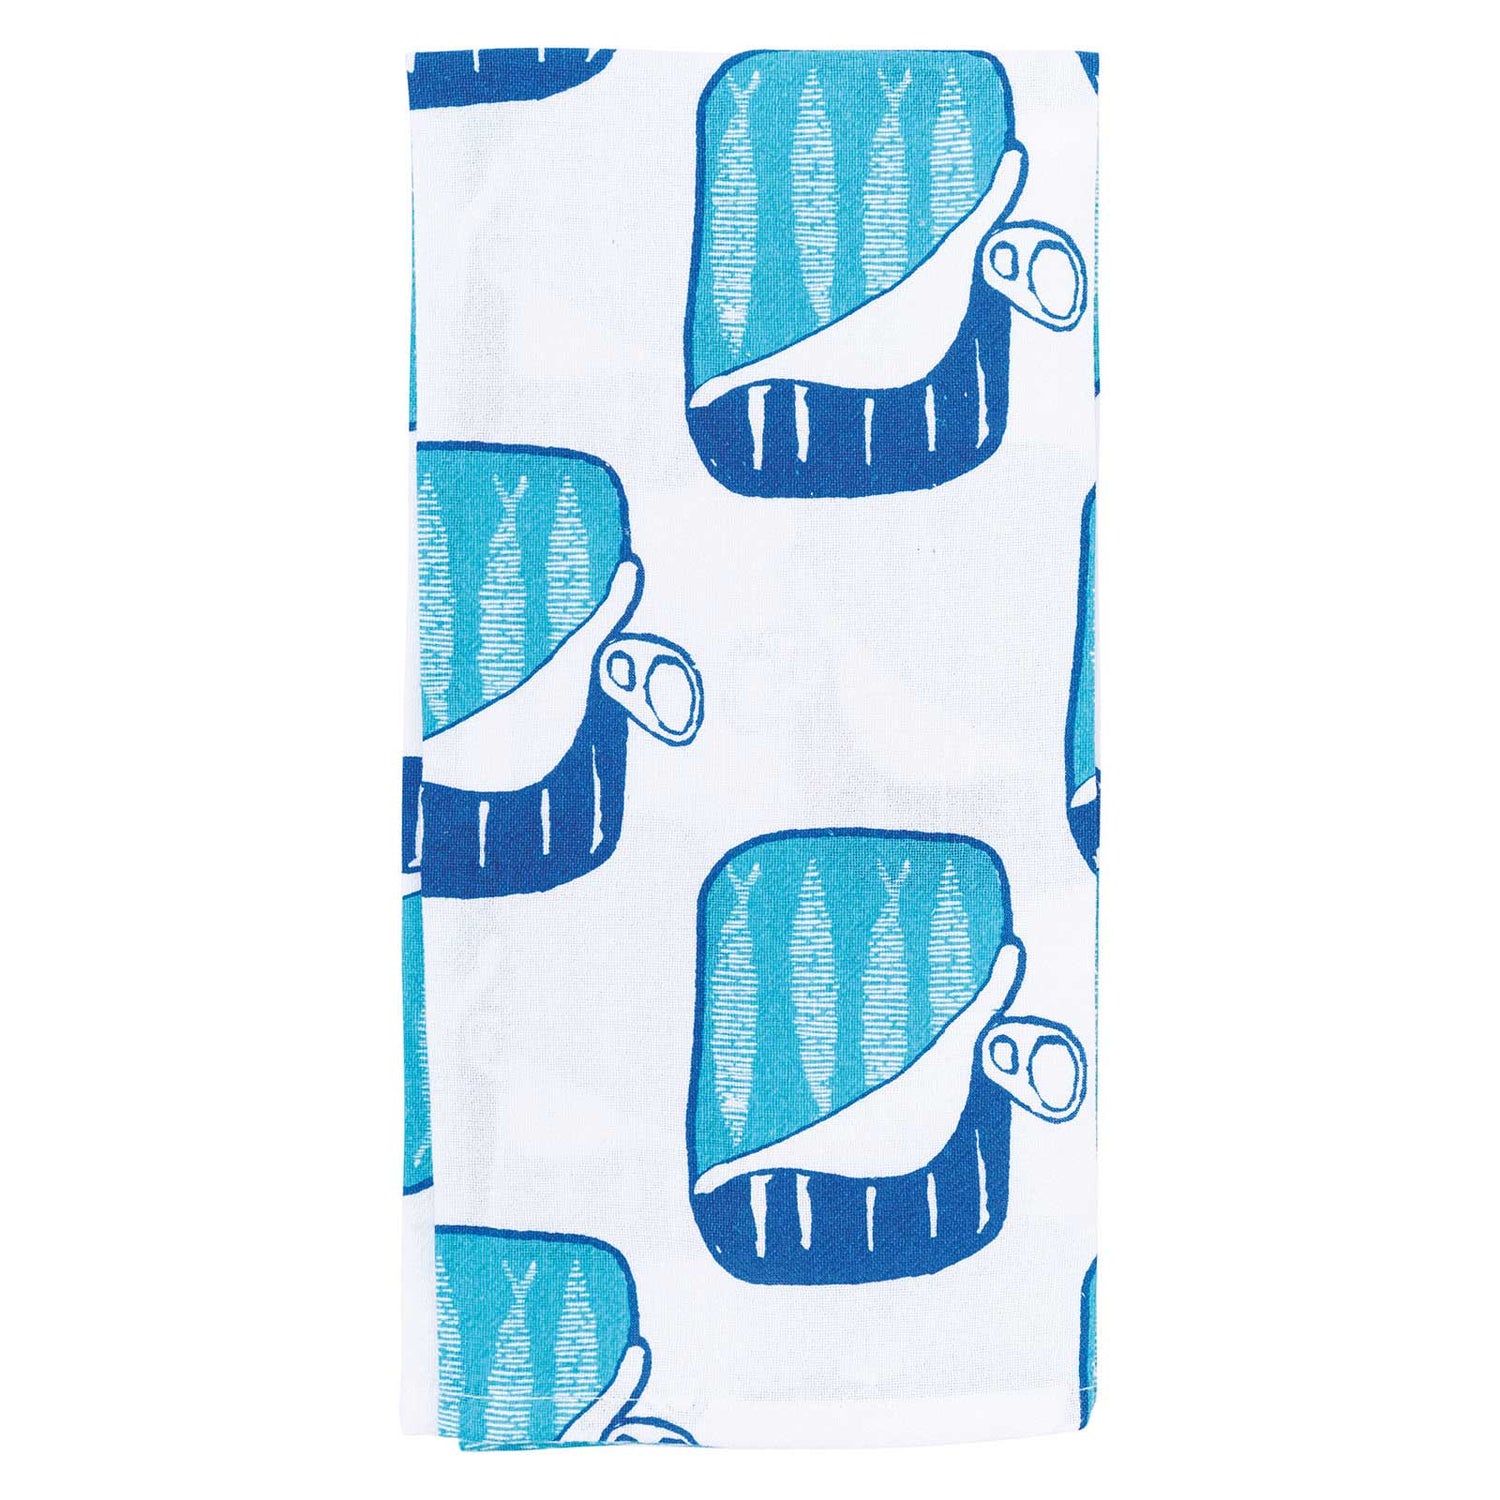 Sardines Kitchen Towel Set Of 3 Kitchen Towel - rockflowerpaper